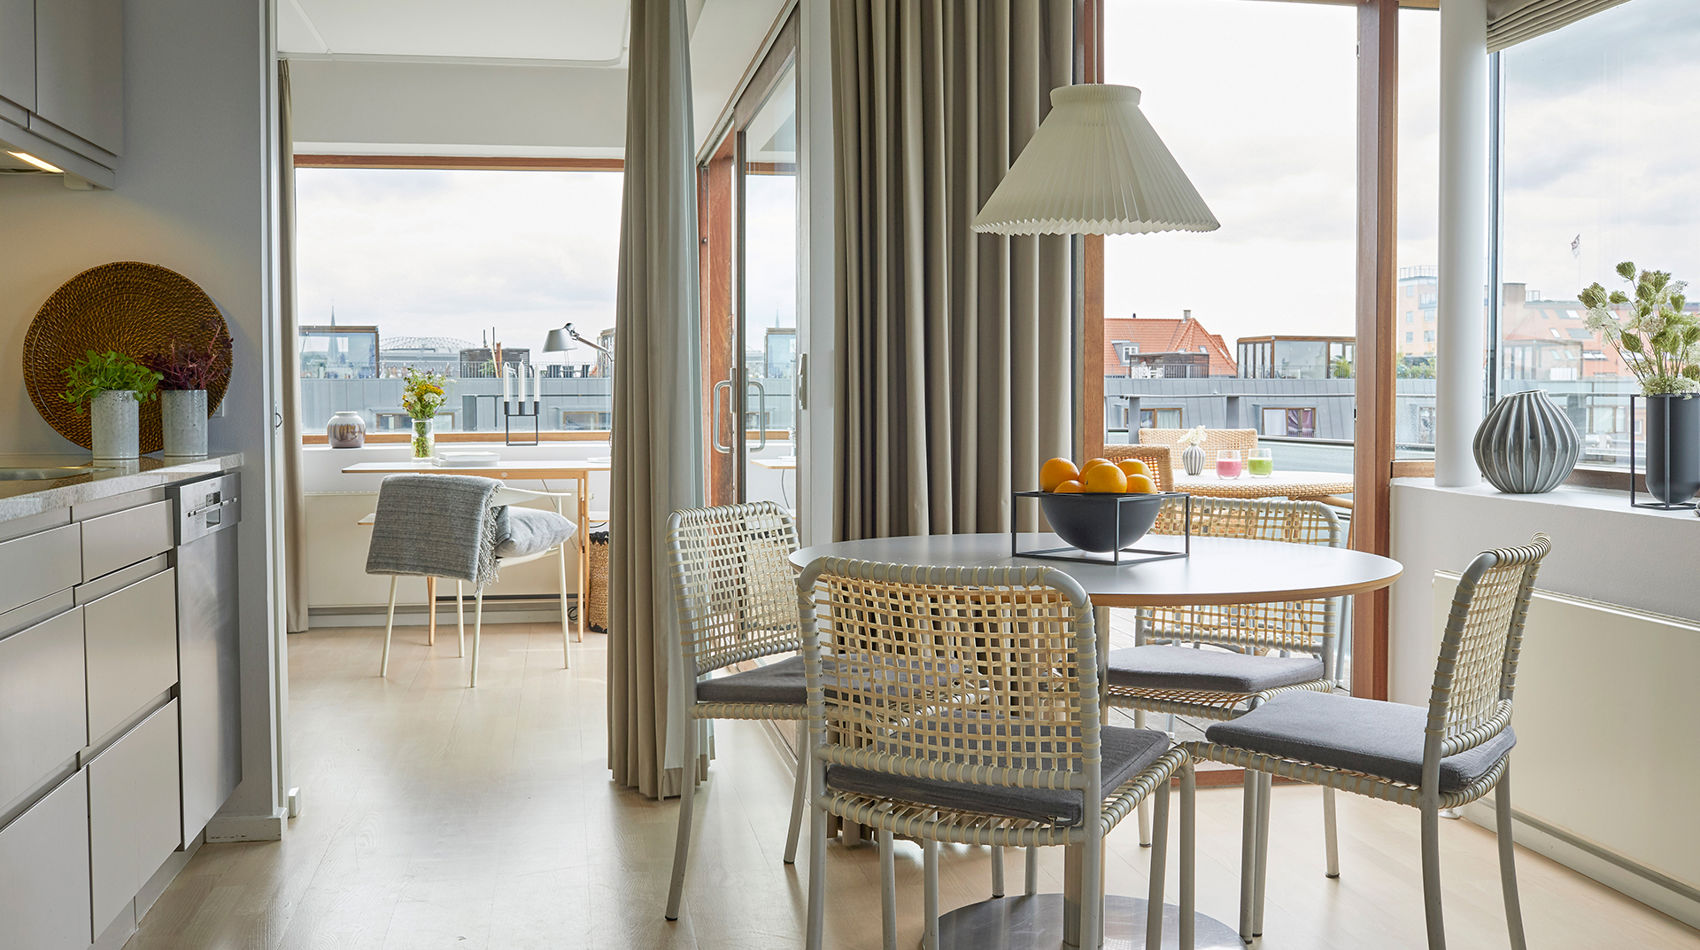 60 m2 hotellejlighed med køkken og spisebord